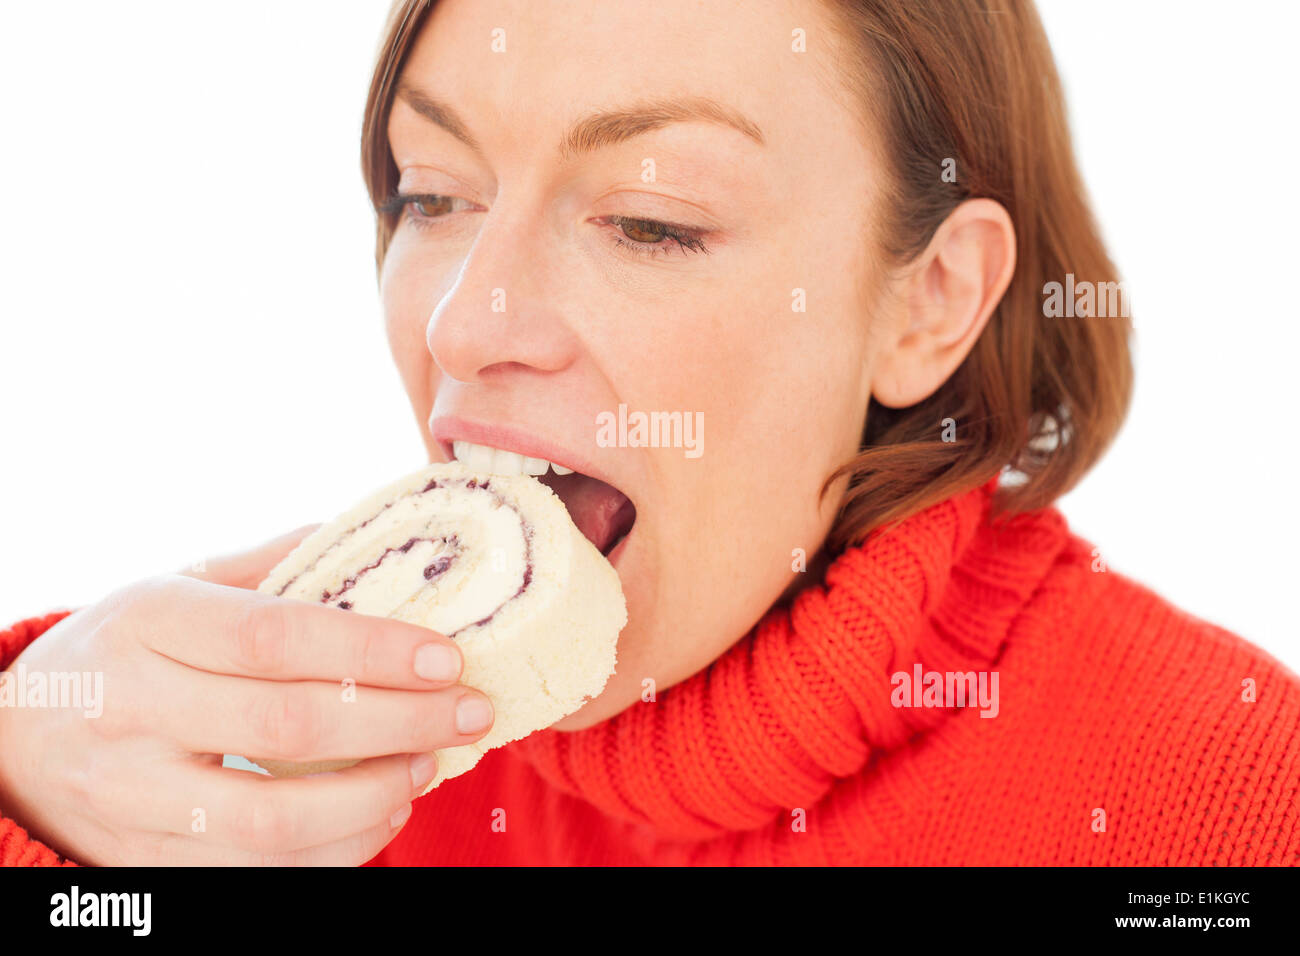 MODEL Release Frau Biss in ein Stück Kuchen. Stockfoto